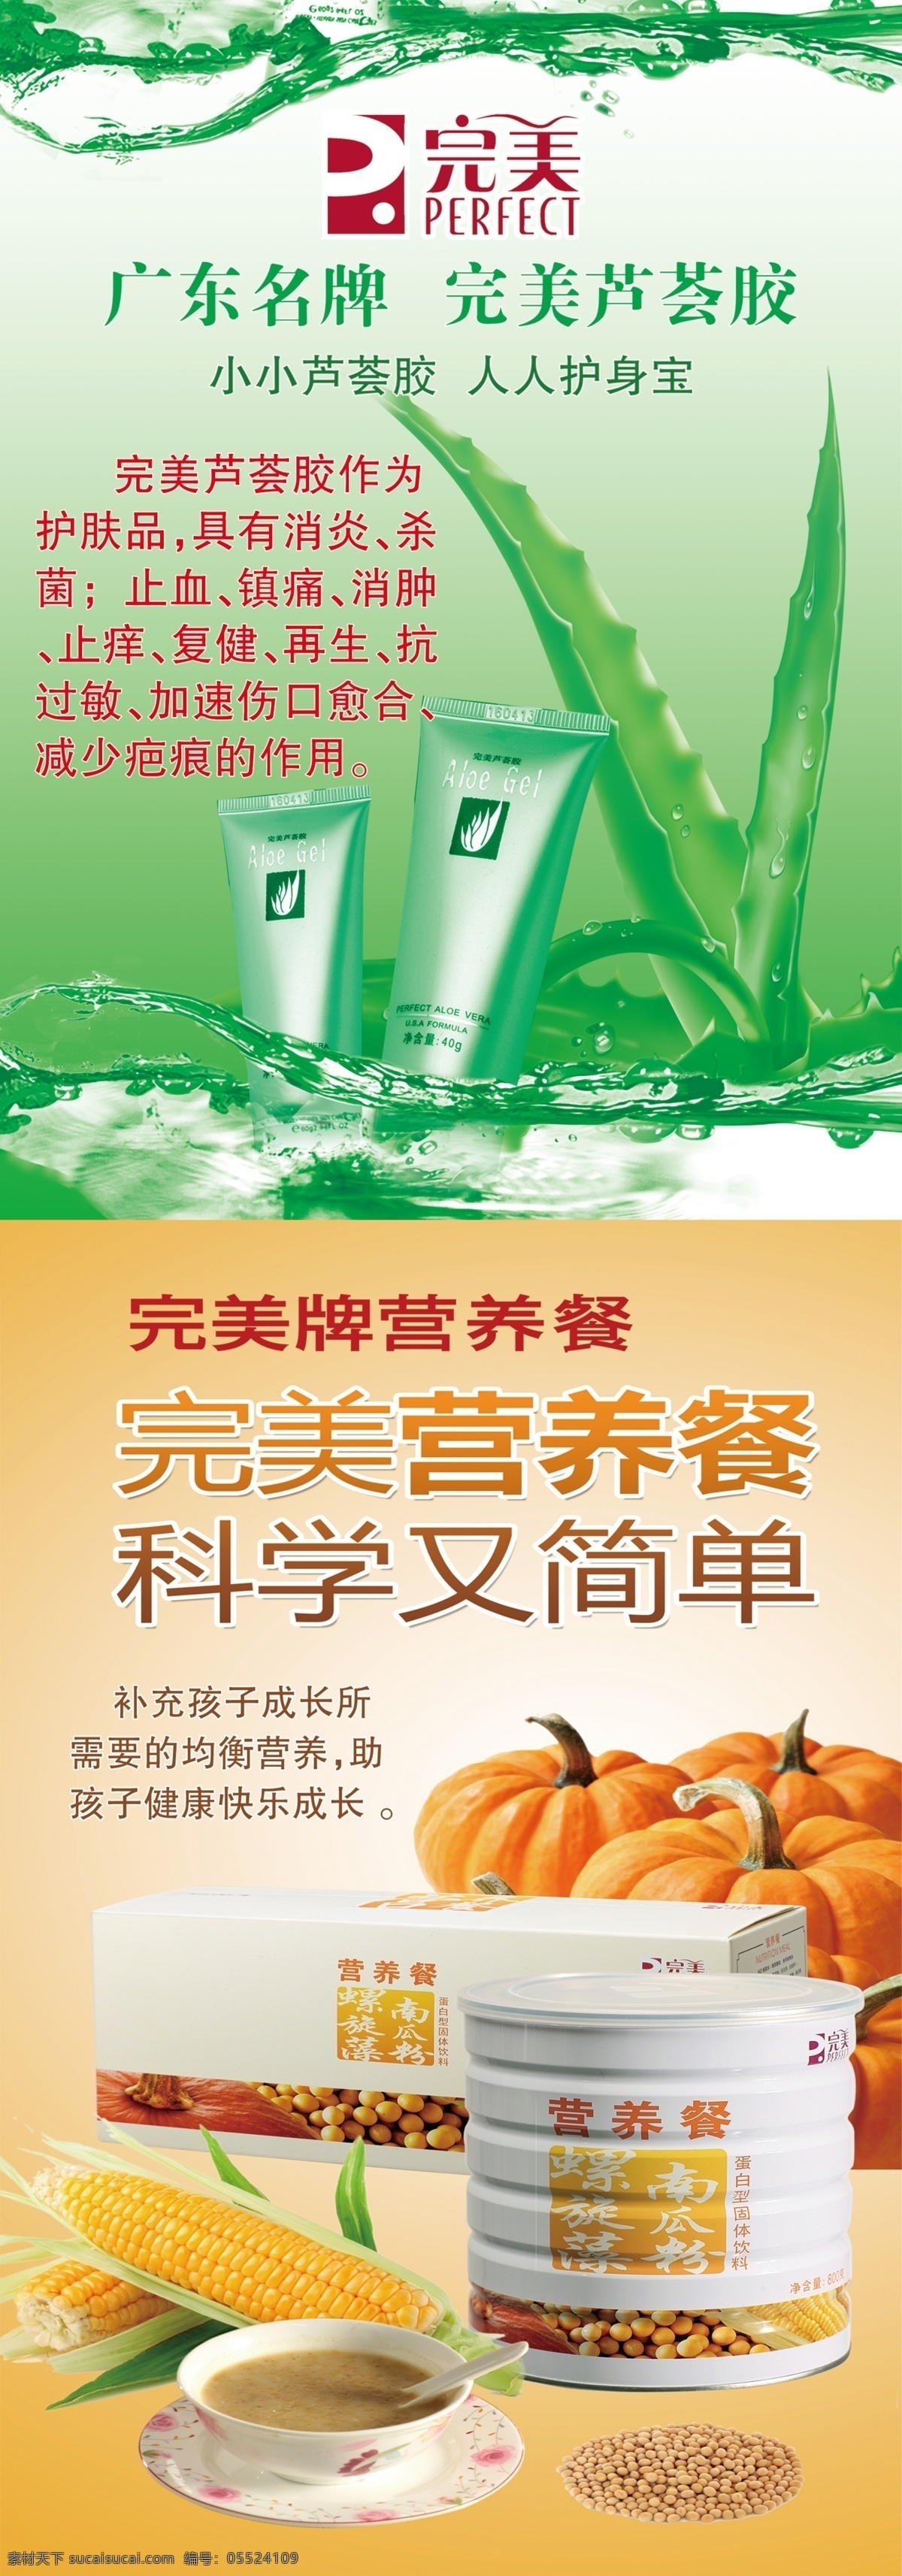 美容广告 完美 芦荟胶 营养早餐 海报 美容 绿色